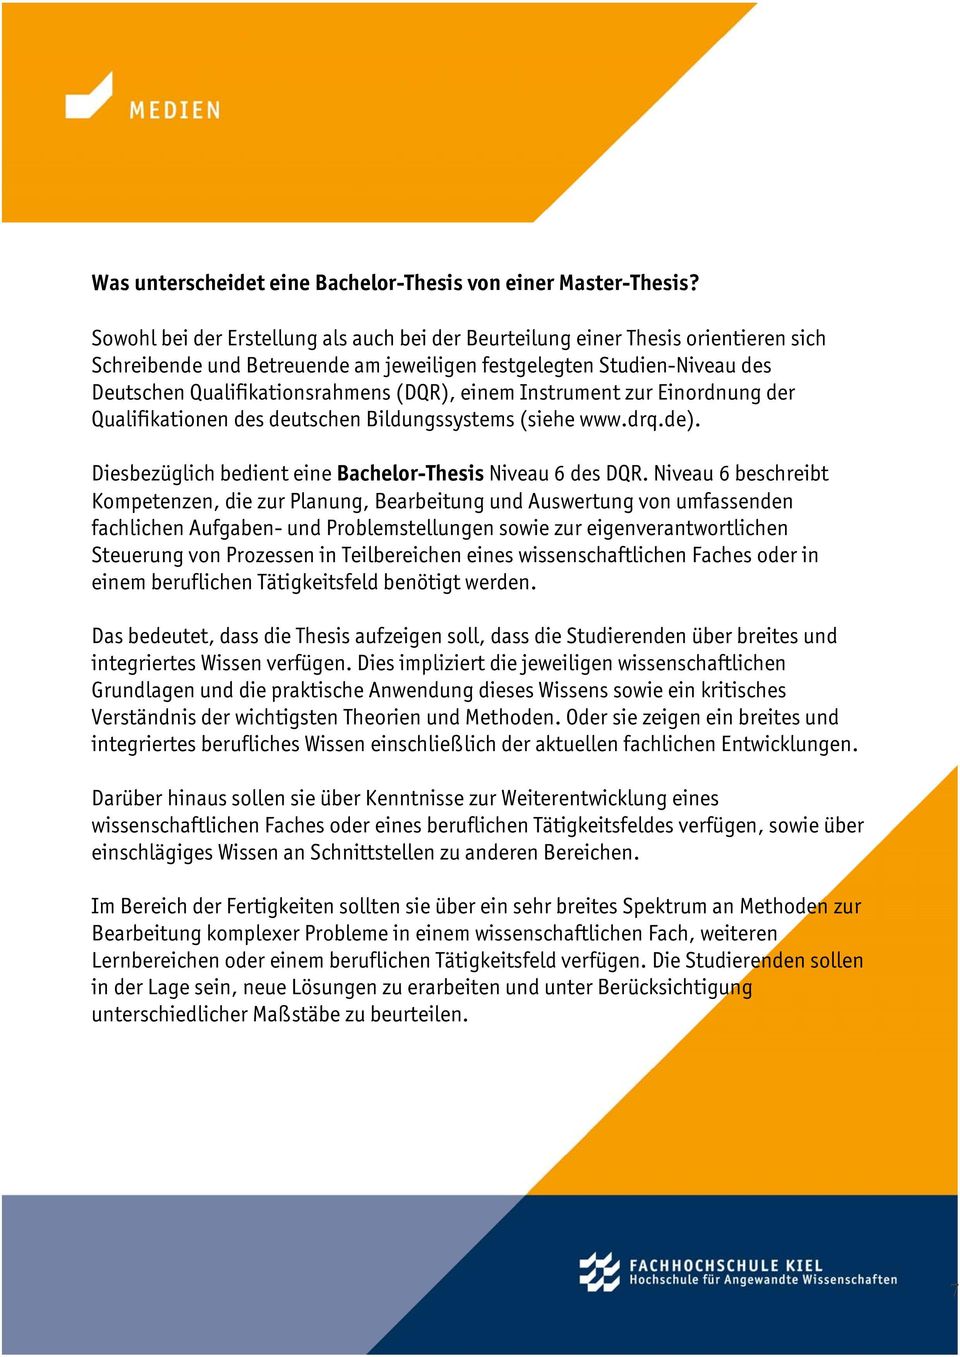 Instrument zur Einrdnung der Qualifikatinen des deutschen Bildungssystems (siehe www.drq.de). Diesbezüglich bedient eine Bachelr-Thesis Niveau 6 des DQR.